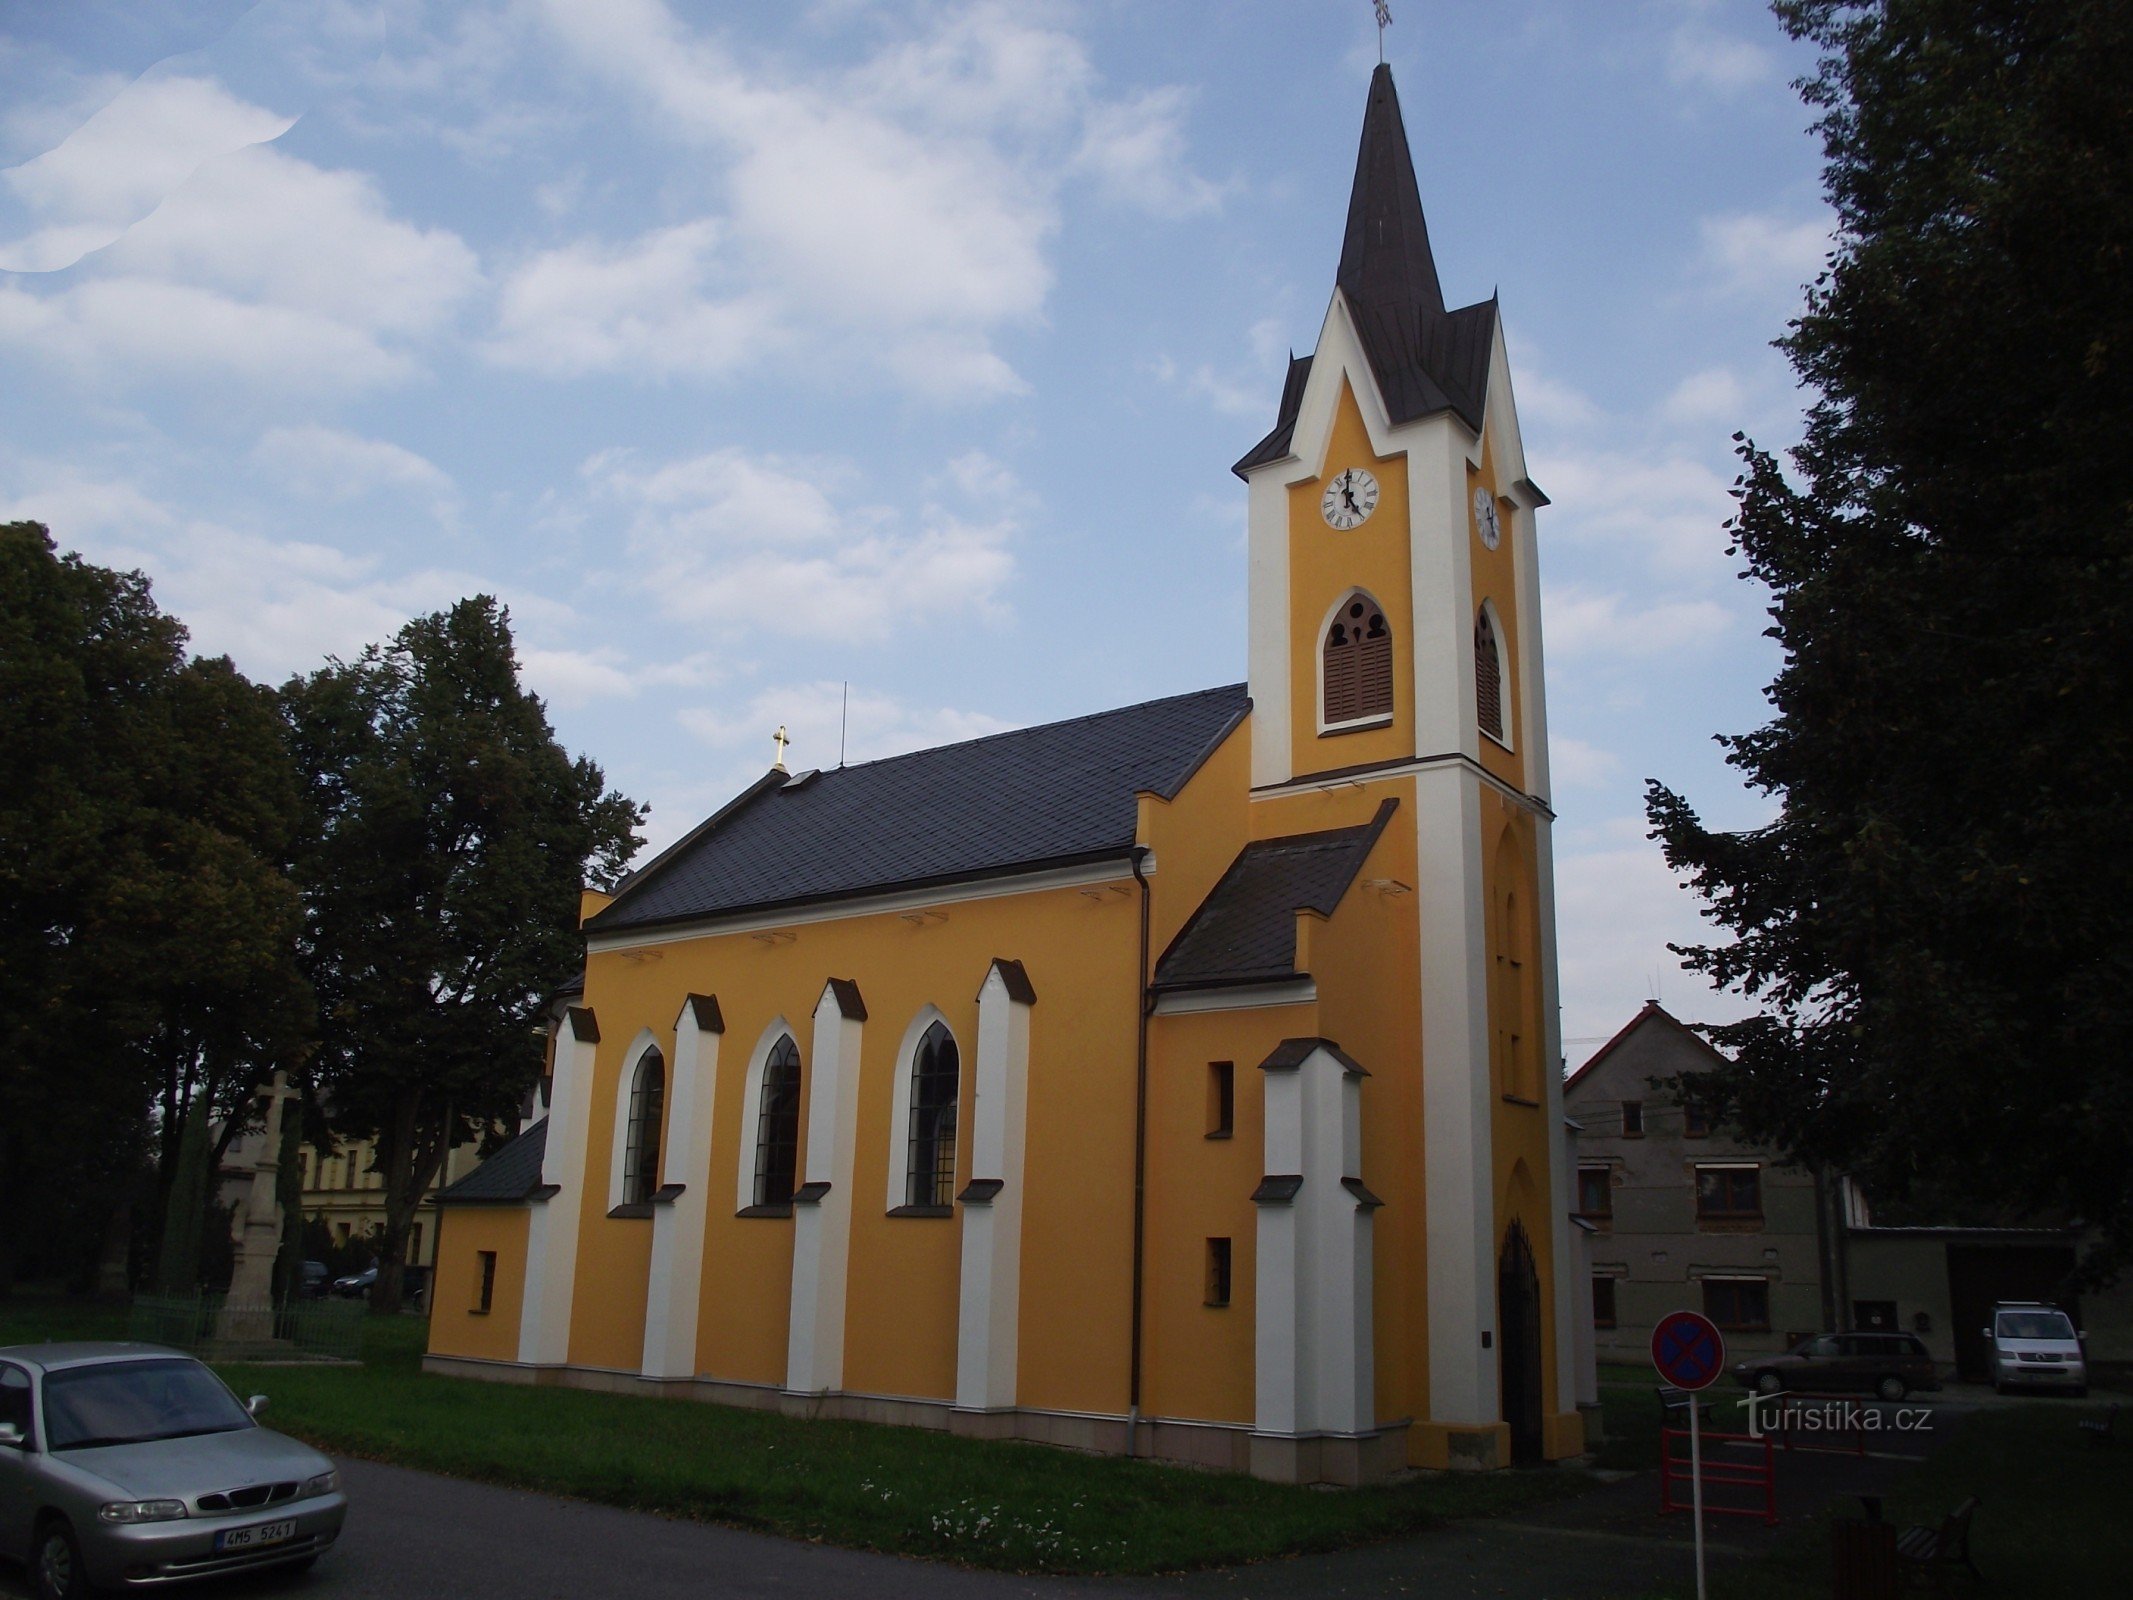 Želechovice (lähellä Uničovia) - Pyhän Tapanin kappeli. Cyril ja Methodius